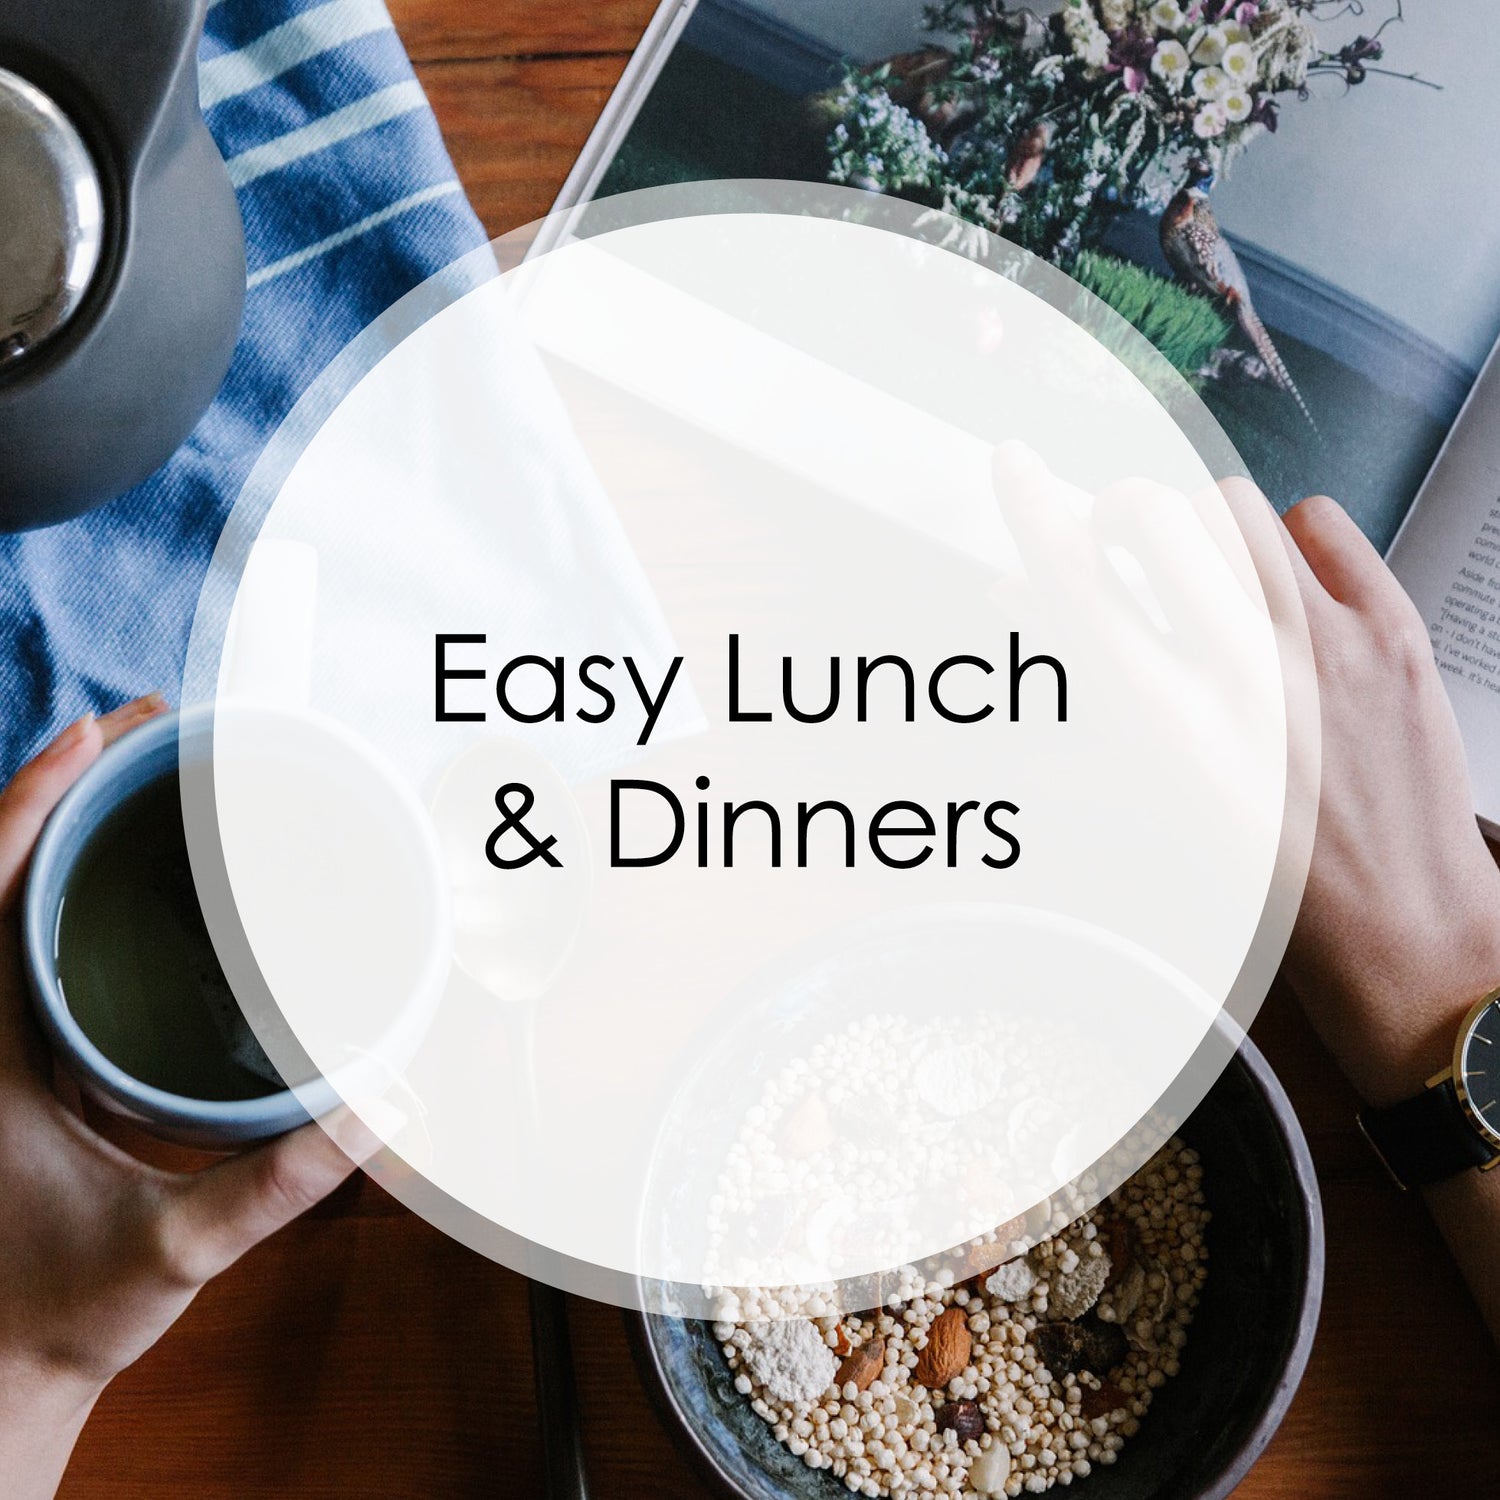 Easy Lunch & Dinner